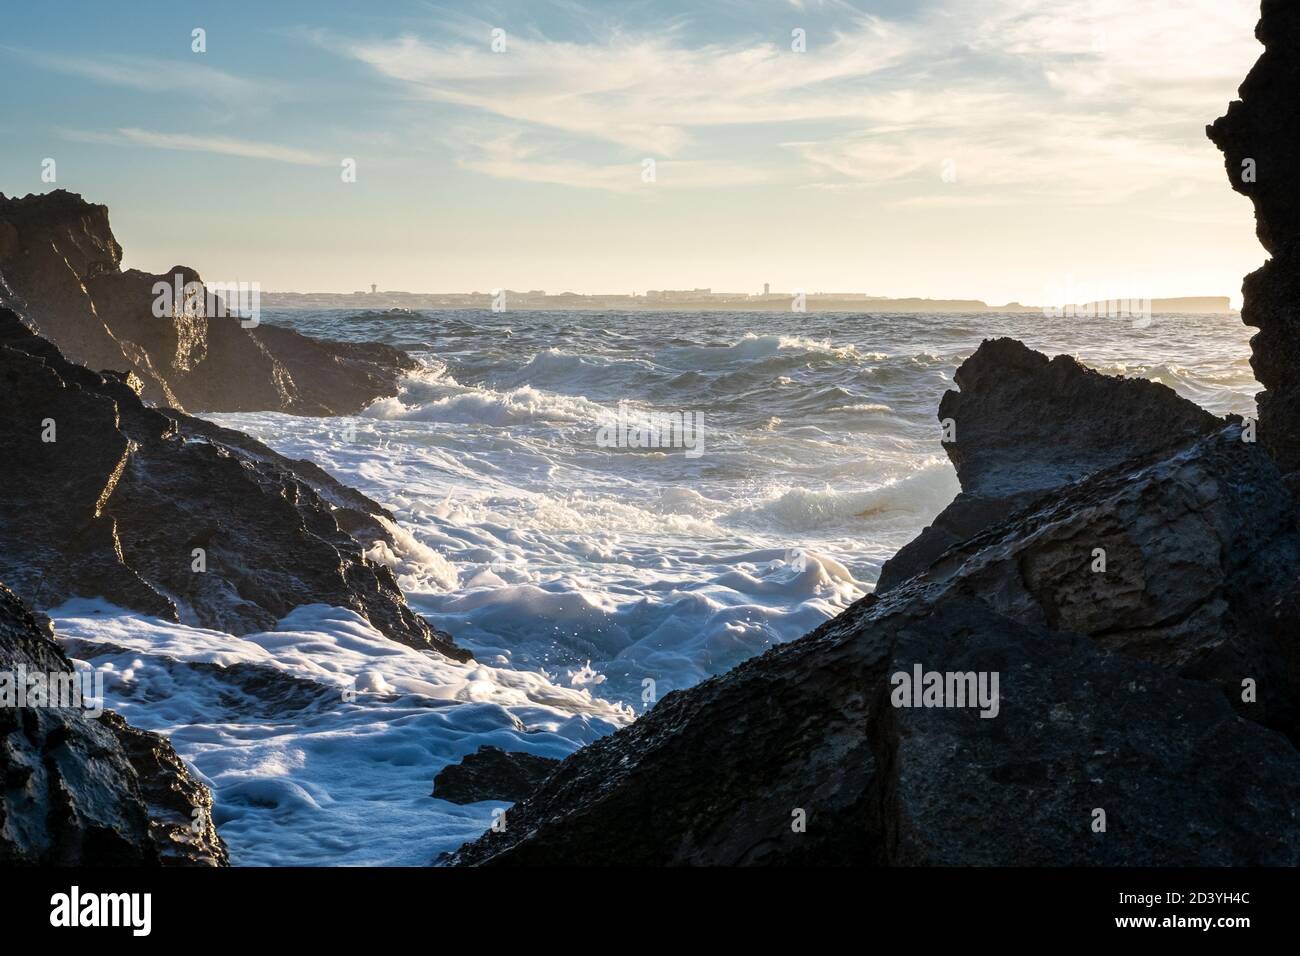 Mar espumoso con olas y rocas en primer plano al atardecer con luz cálida y Peniche península en la distancia, Baleal Portugal Foto de stock